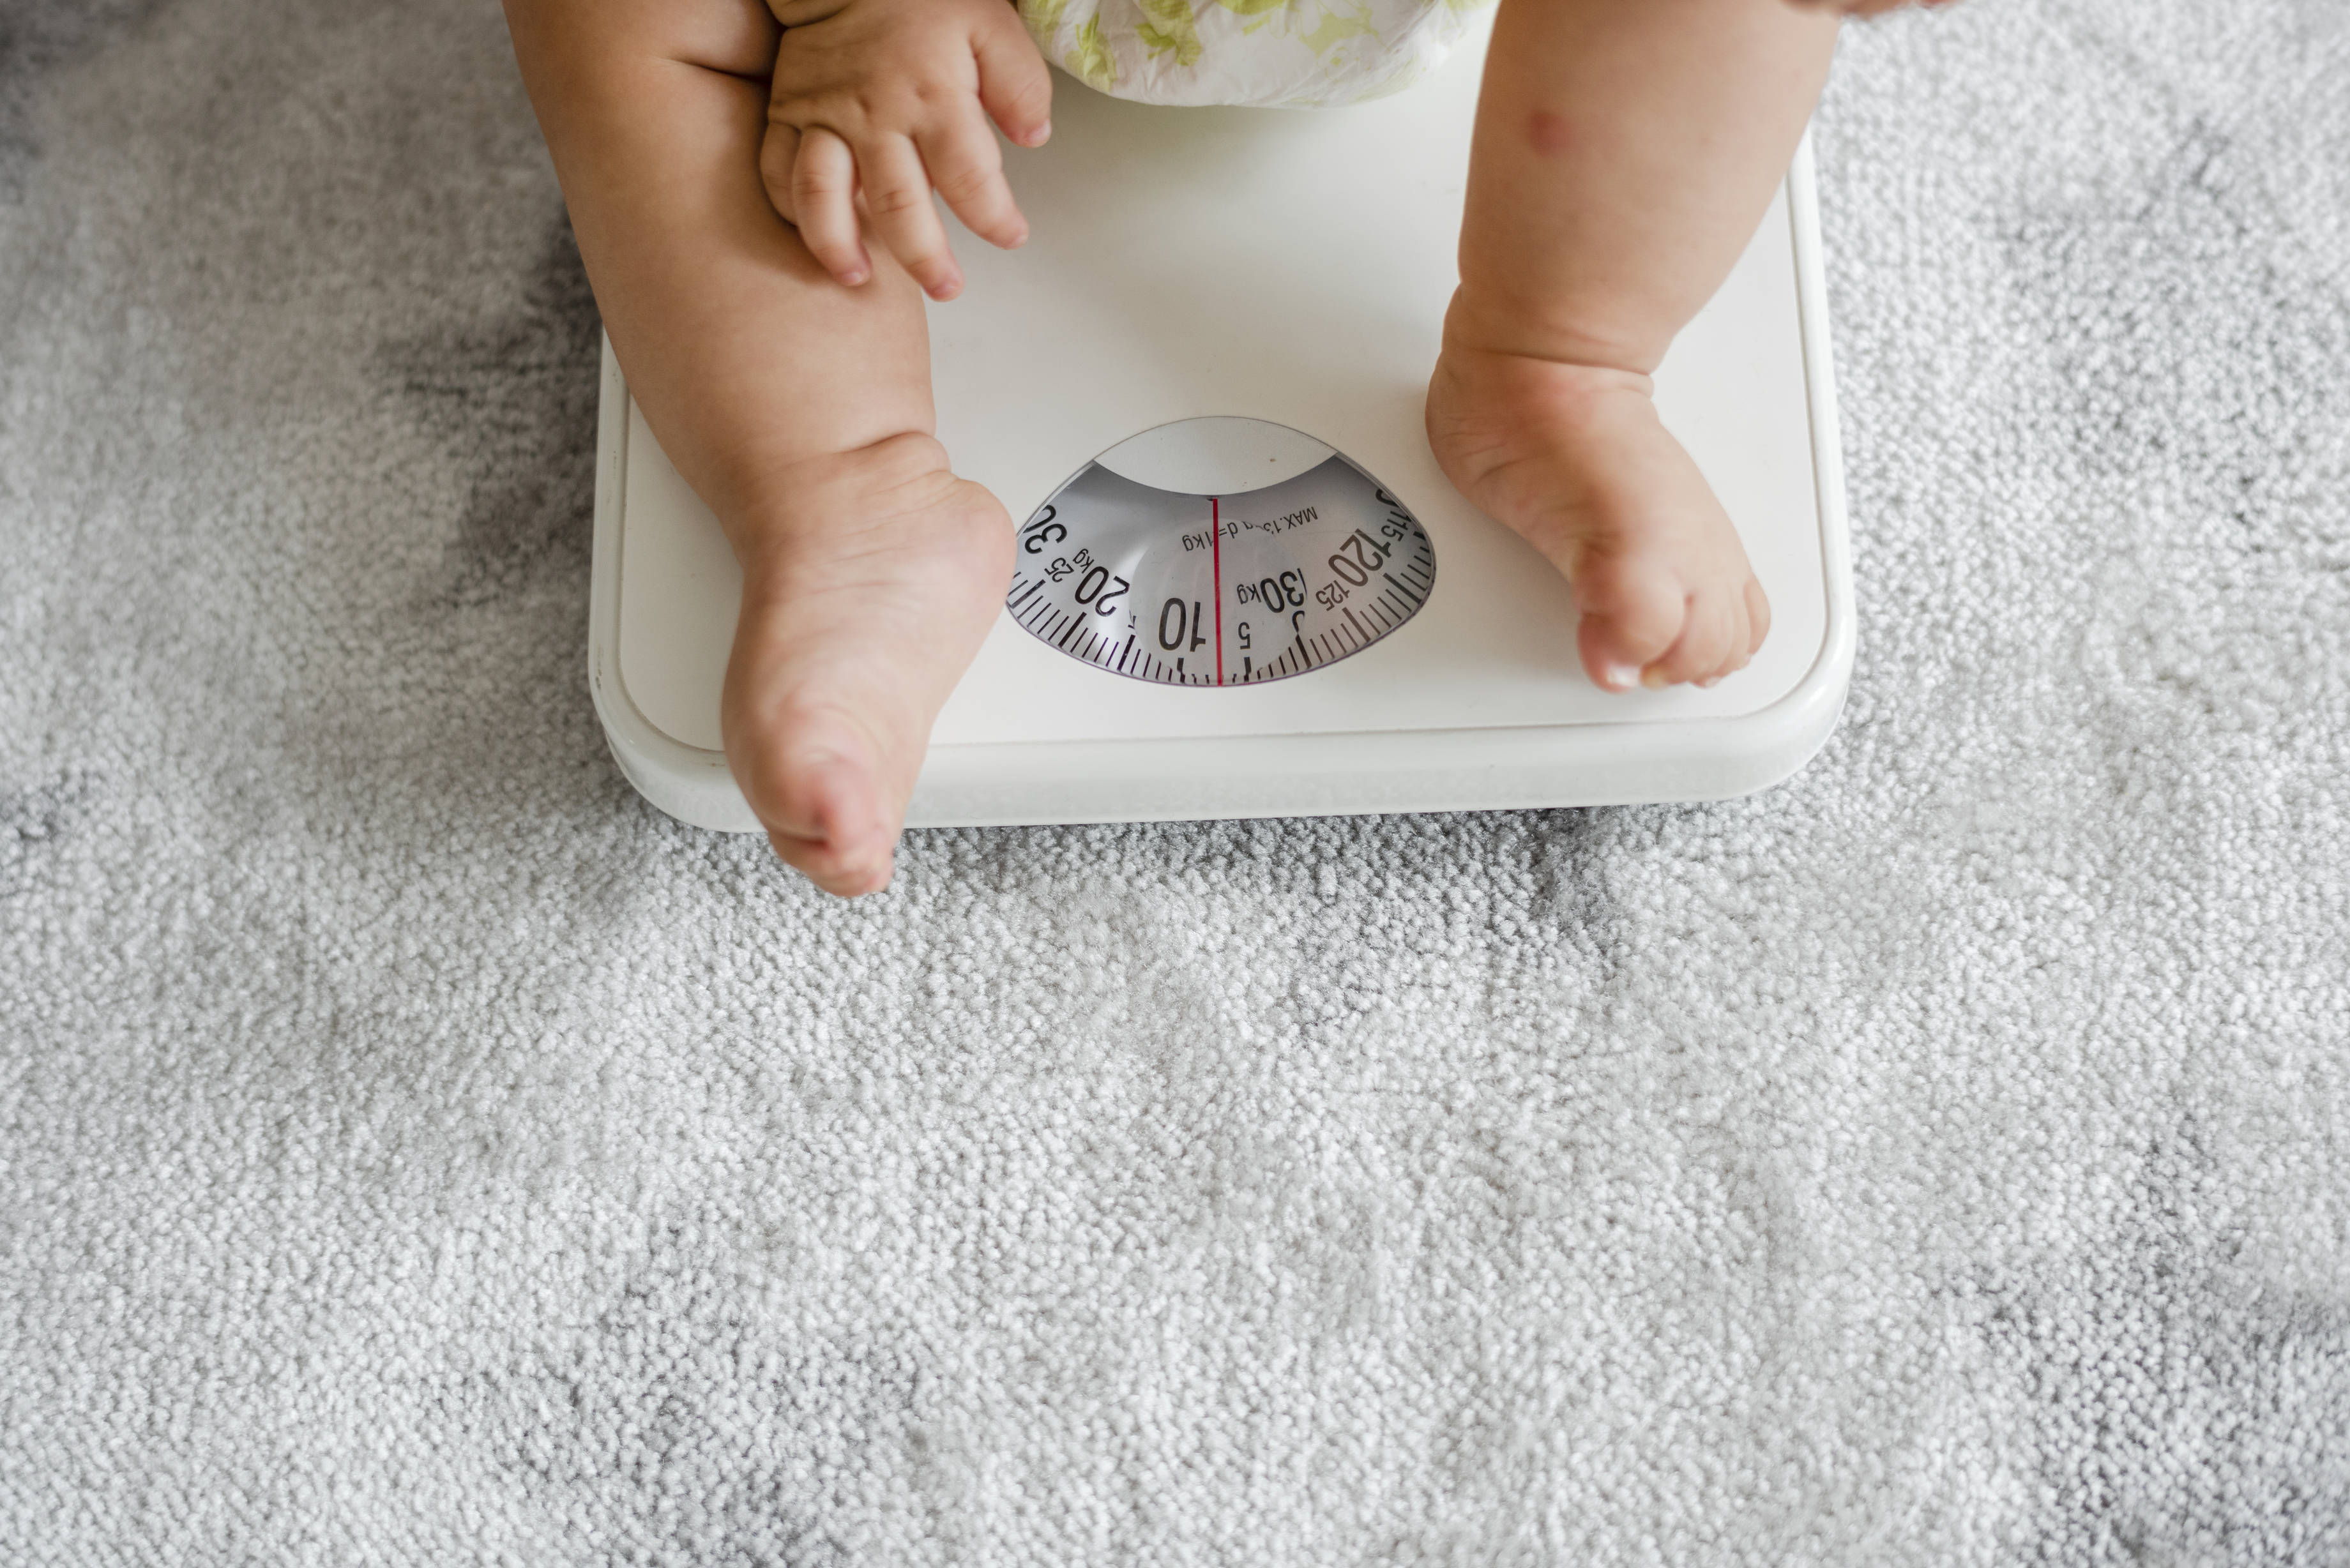 Cân nặng trung bình của trẻ theo tháng là bao nhiêu? | viamclinic.vn